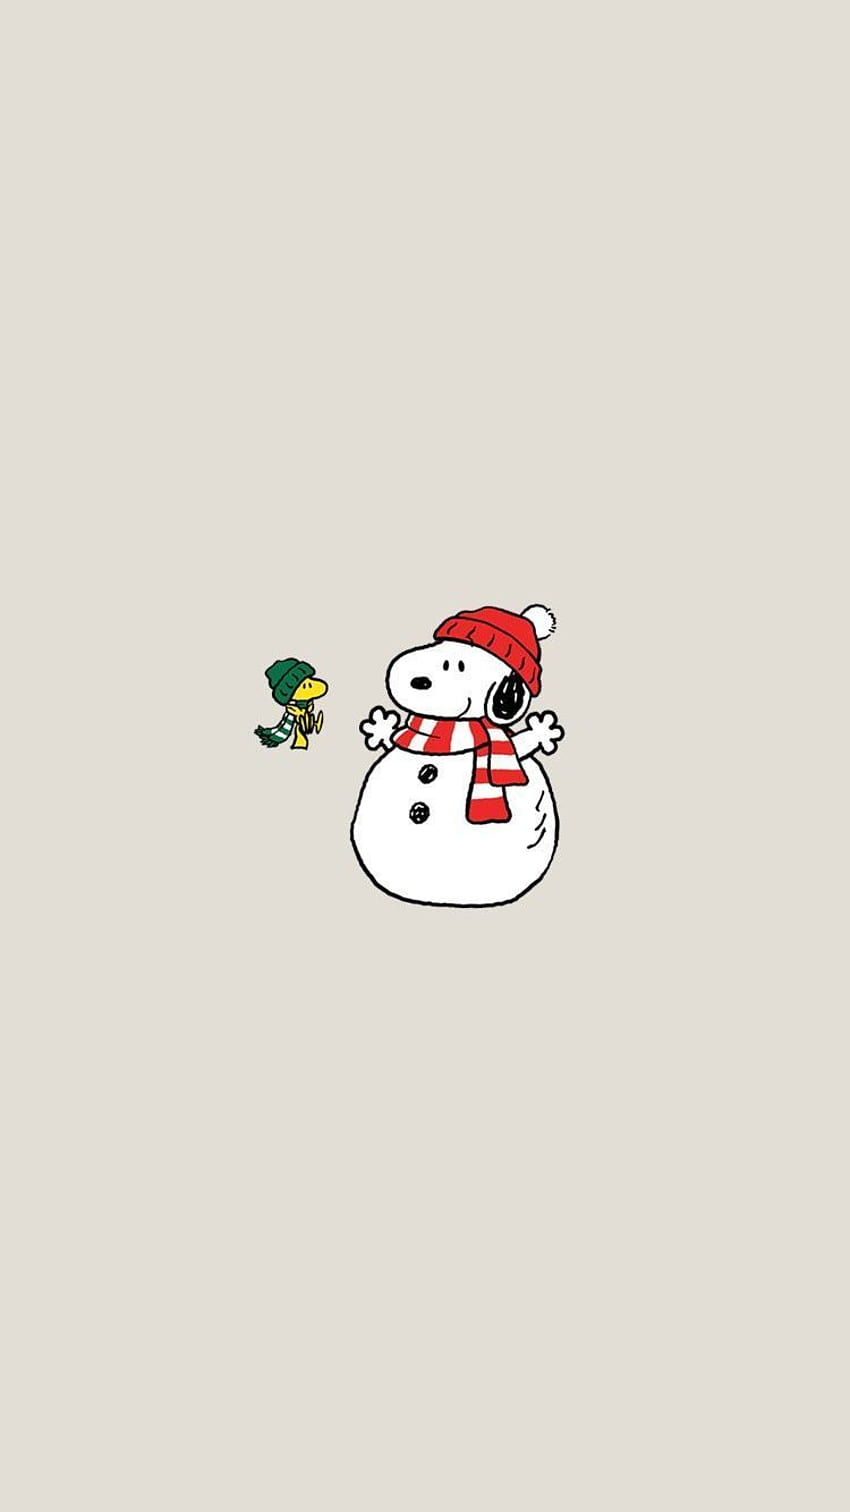 Những hình nền chú chó Snoopy dễ thương cùng với lễ hội Noel sẽ khiến bạn cảm thấy vô cùng truyền cảm hứng khi sử dụng điện thoại của mình. Hãy xem Snoopy đeo kính và áo Santa Claus trong hình nền này, đảm bảo bạn thích thú không tả được.